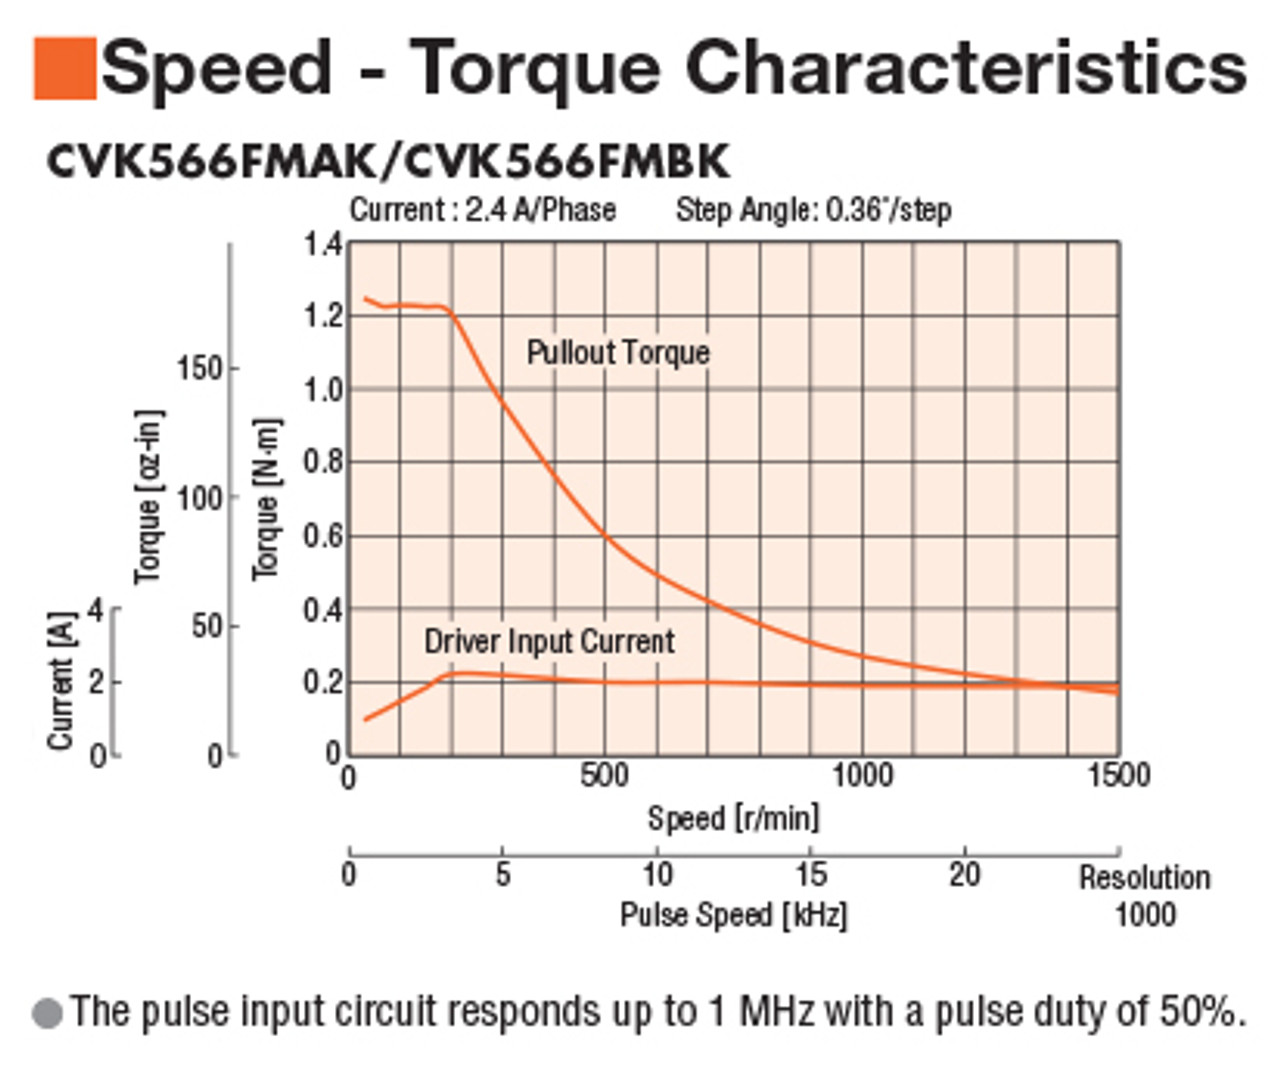 PKP566FMN24A - Speed-Torque